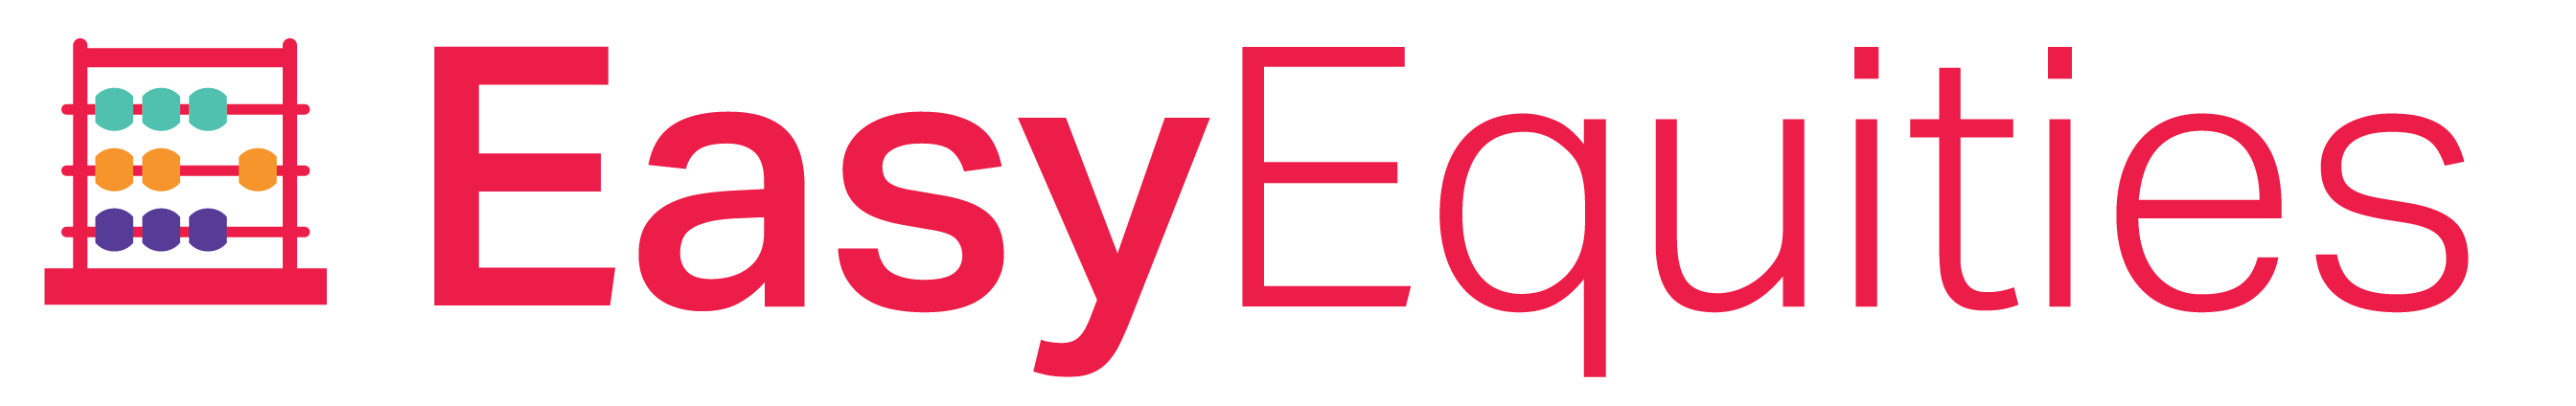 EasyEquities logo